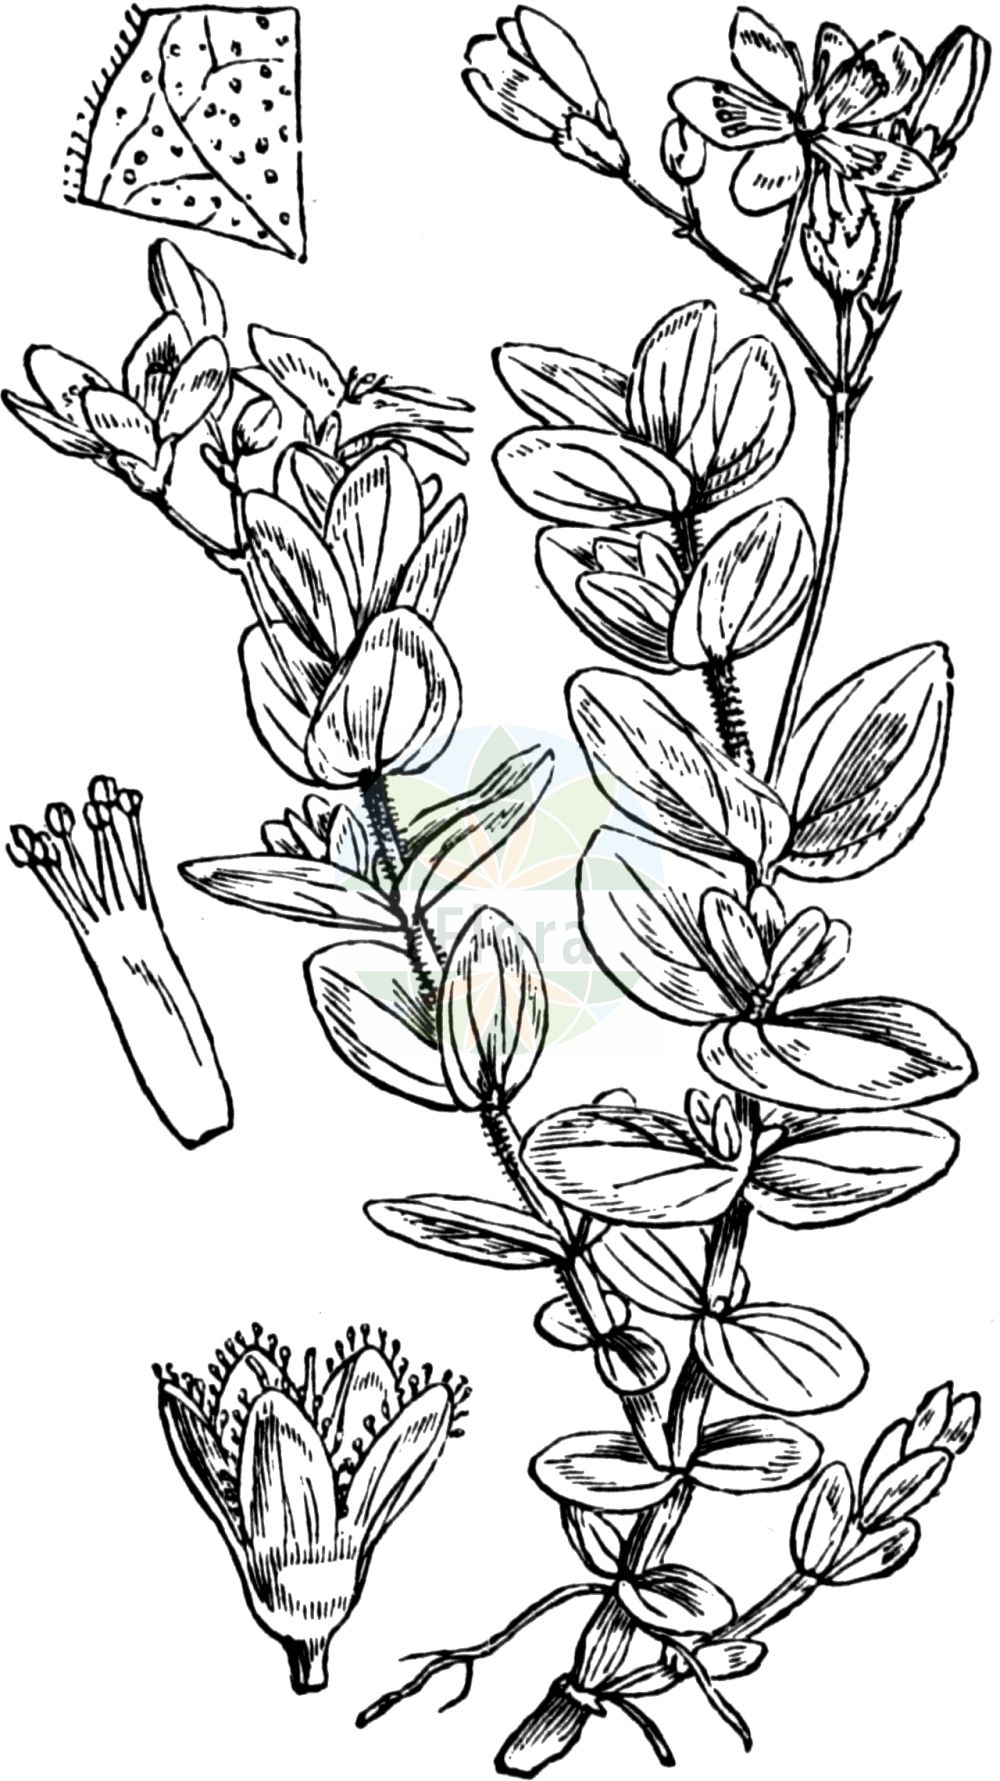 Historische Abbildung von Hypericum elodes (Sumpf-Johanniskraut - Marsh St John's-wort). Das Bild zeigt Blatt, Bluete, Frucht und Same. ---- Historical Drawing of Hypericum elodes (Sumpf-Johanniskraut - Marsh St John's-wort). The image is showing leaf, flower, fruit and seed.(Hypericum elodes,Sumpf-Johanniskraut,Marsh St John's-wort,Elodes palustris,Hypericum elodes,Hypericum palustre,Sumpf-Johanniskraut,Marsh St John's-wort,Hypericum,Johanniskraut,St. John's Wort,Hypericaceae,Hartheugewächse,St. John's Wort family,Blatt,Bluete,Frucht,Same,leaf,flower,fruit,seed,Fitch et al. (1880))